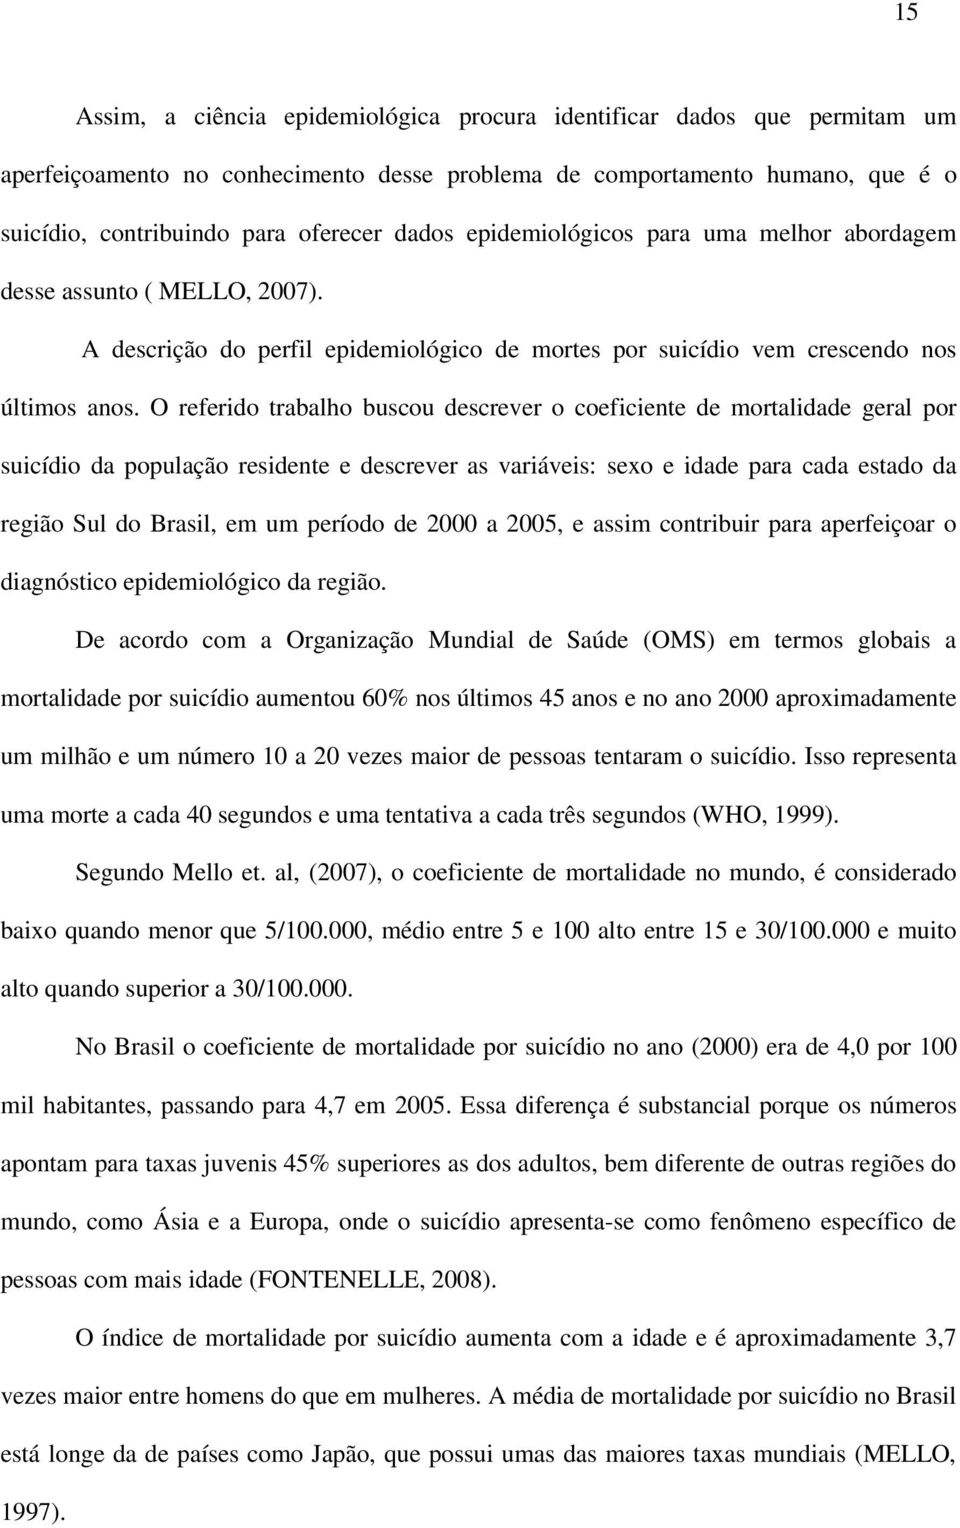 O referido trabalho buscou descrever o coeficiente de mortalidade geral por suicídio da população residente e descrever as variáveis: sexo e idade para cada estado da região Sul do Brasil, em um